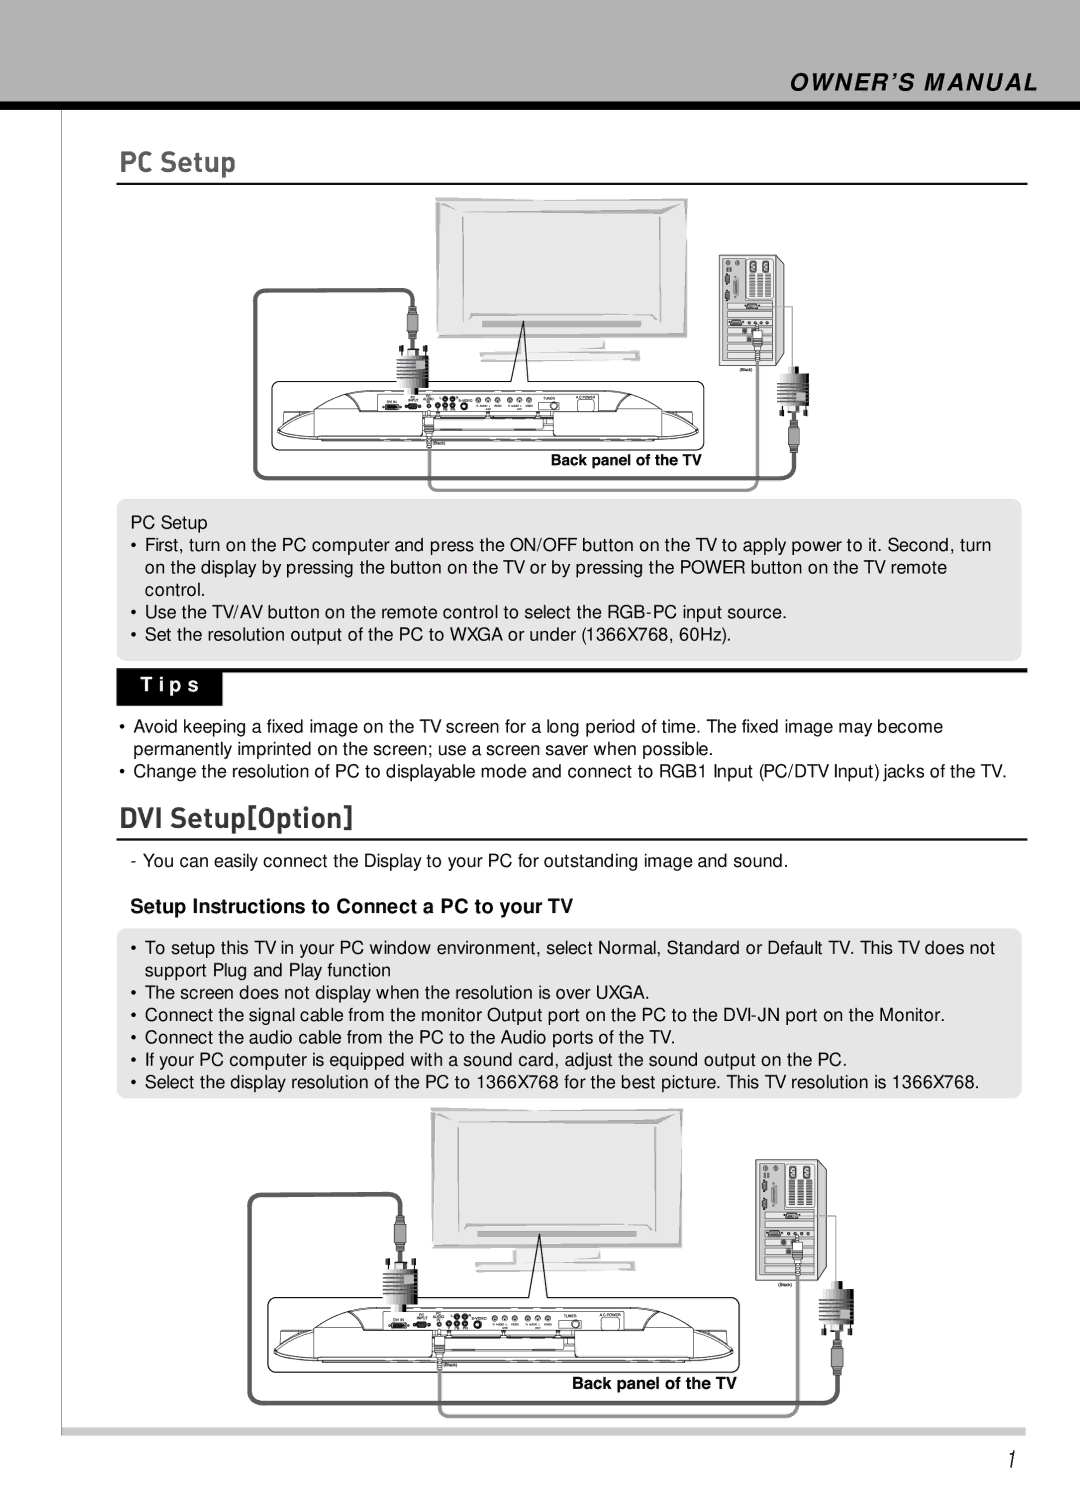 Hyundai IT HLT-2672 owner manual DVI SetupOption 